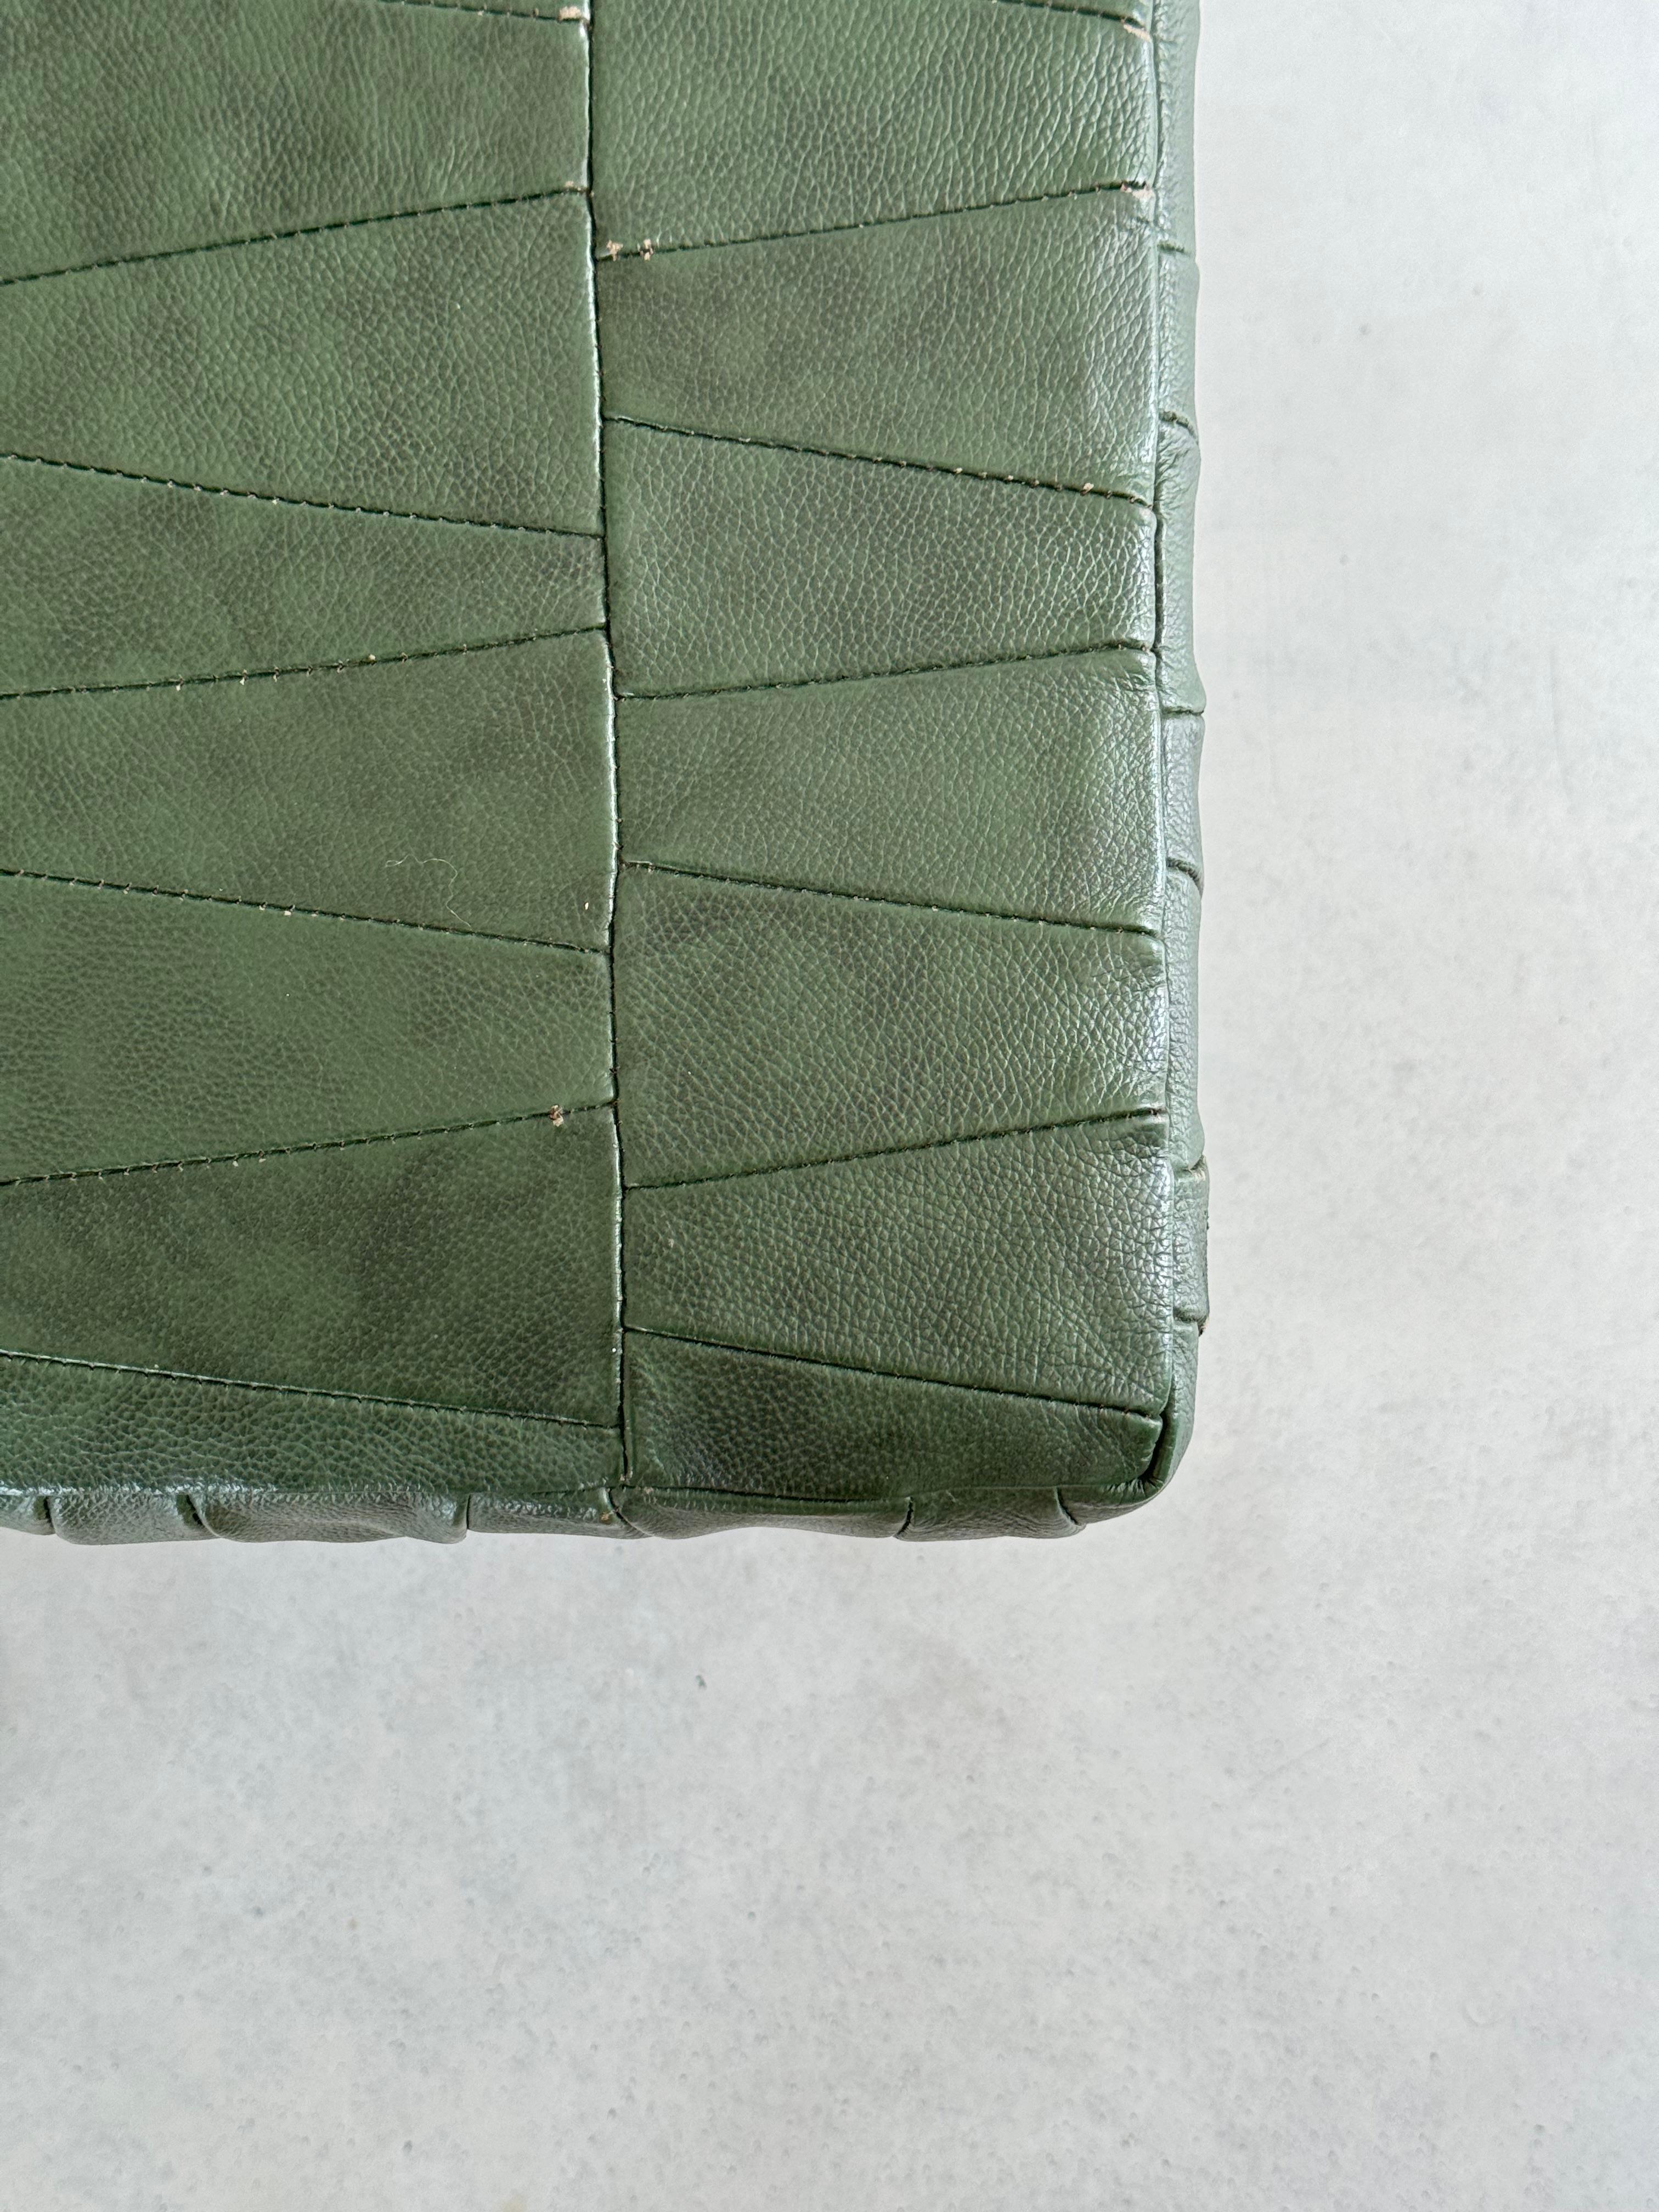 Swiss De Sede Design Dark Green Leather Patchwork Storage Ottoman, Switzerland 1970s For Sale